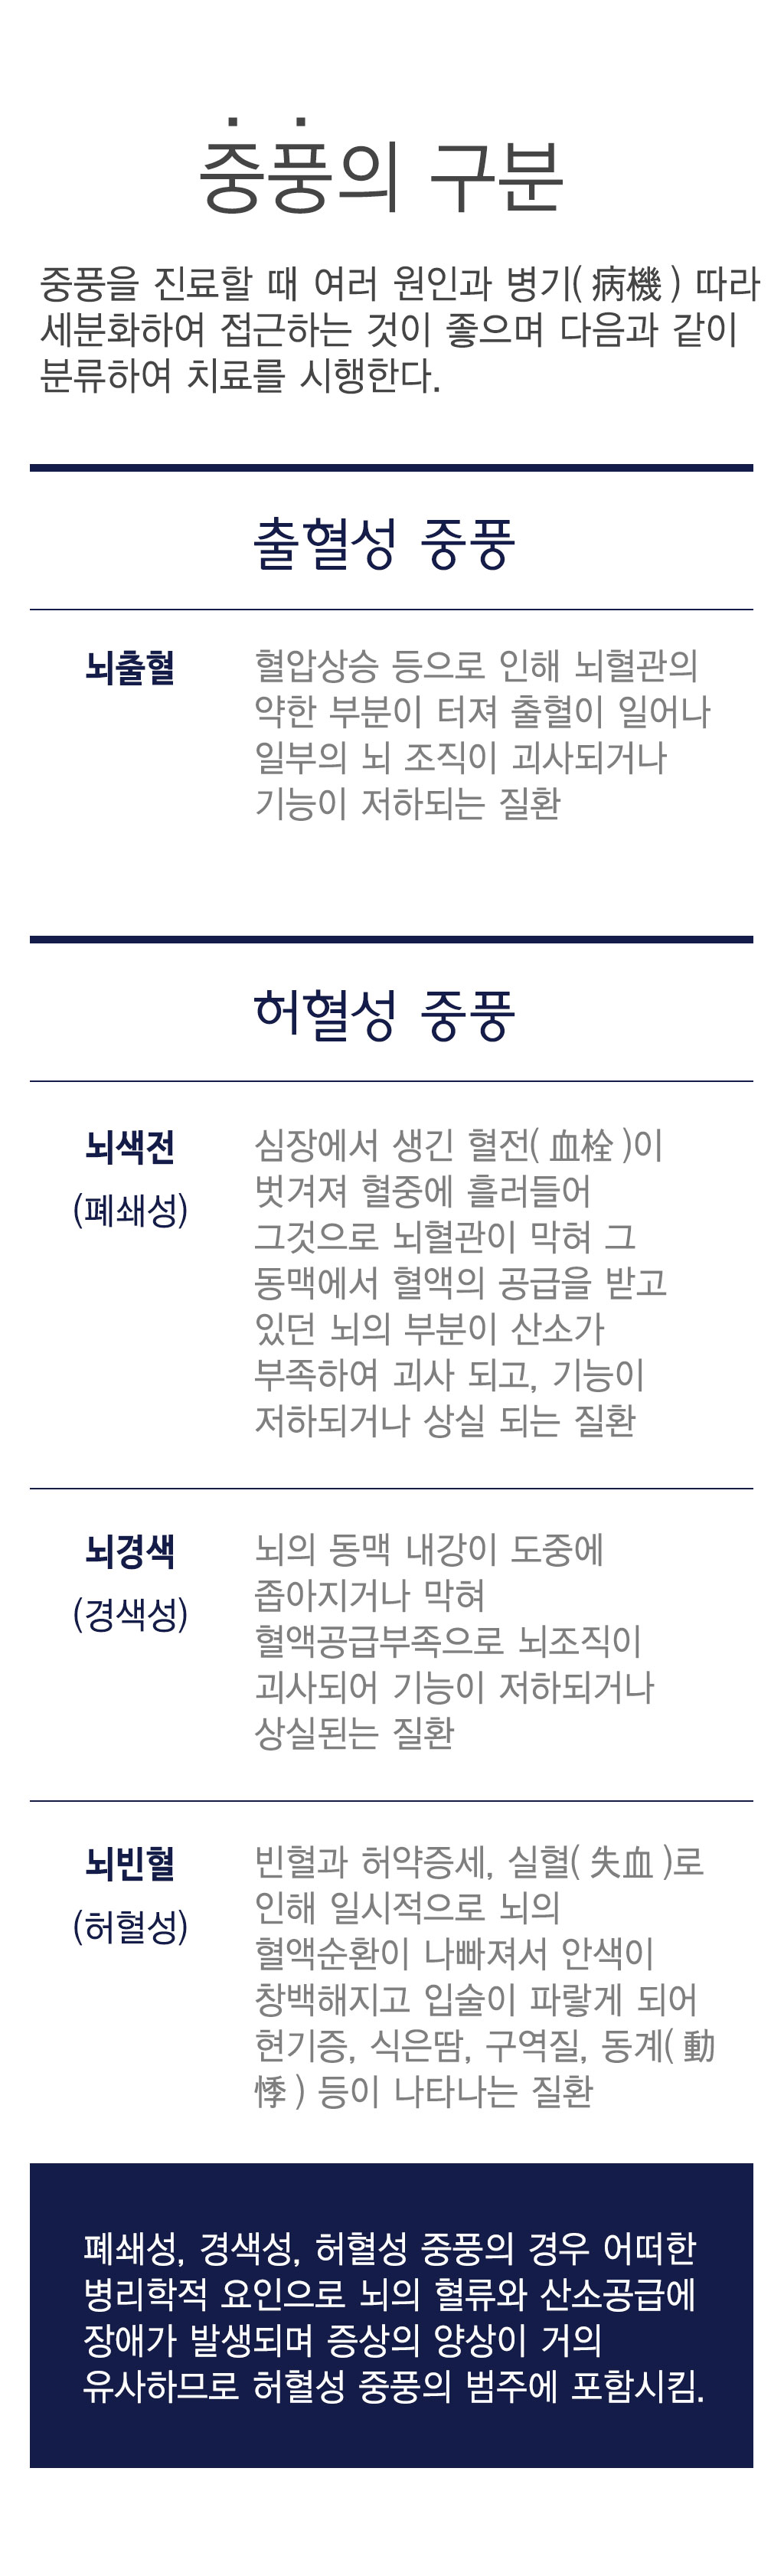 한국한의원, 한국한의원 중풍 클리닉, 중풍, 와사풍, 수전풍, 뇌전풍